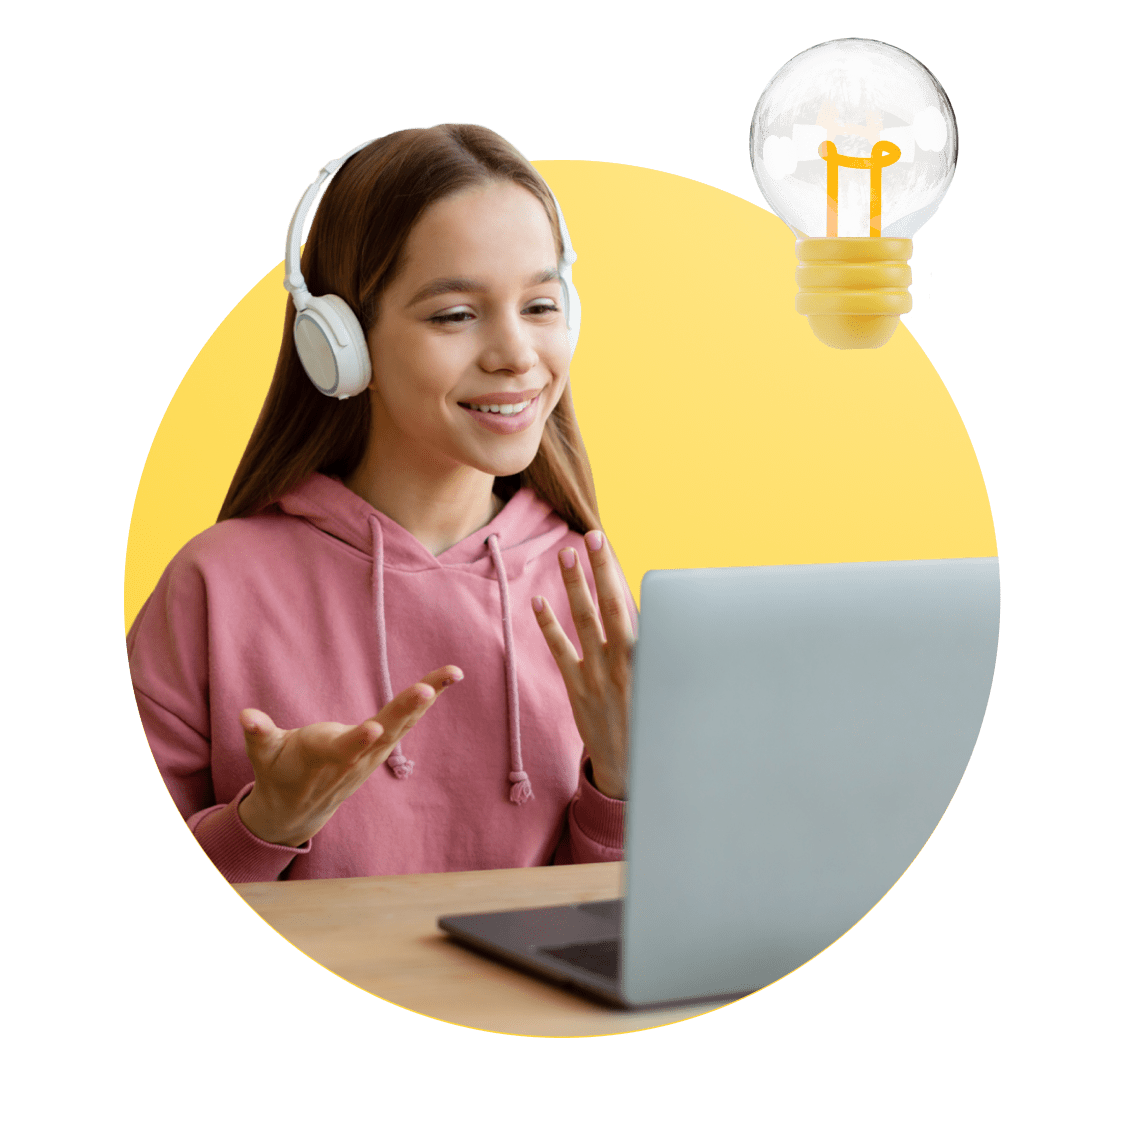 California Online Schools image 6 (name 4 Young Girl Desk Headphones Light 1)